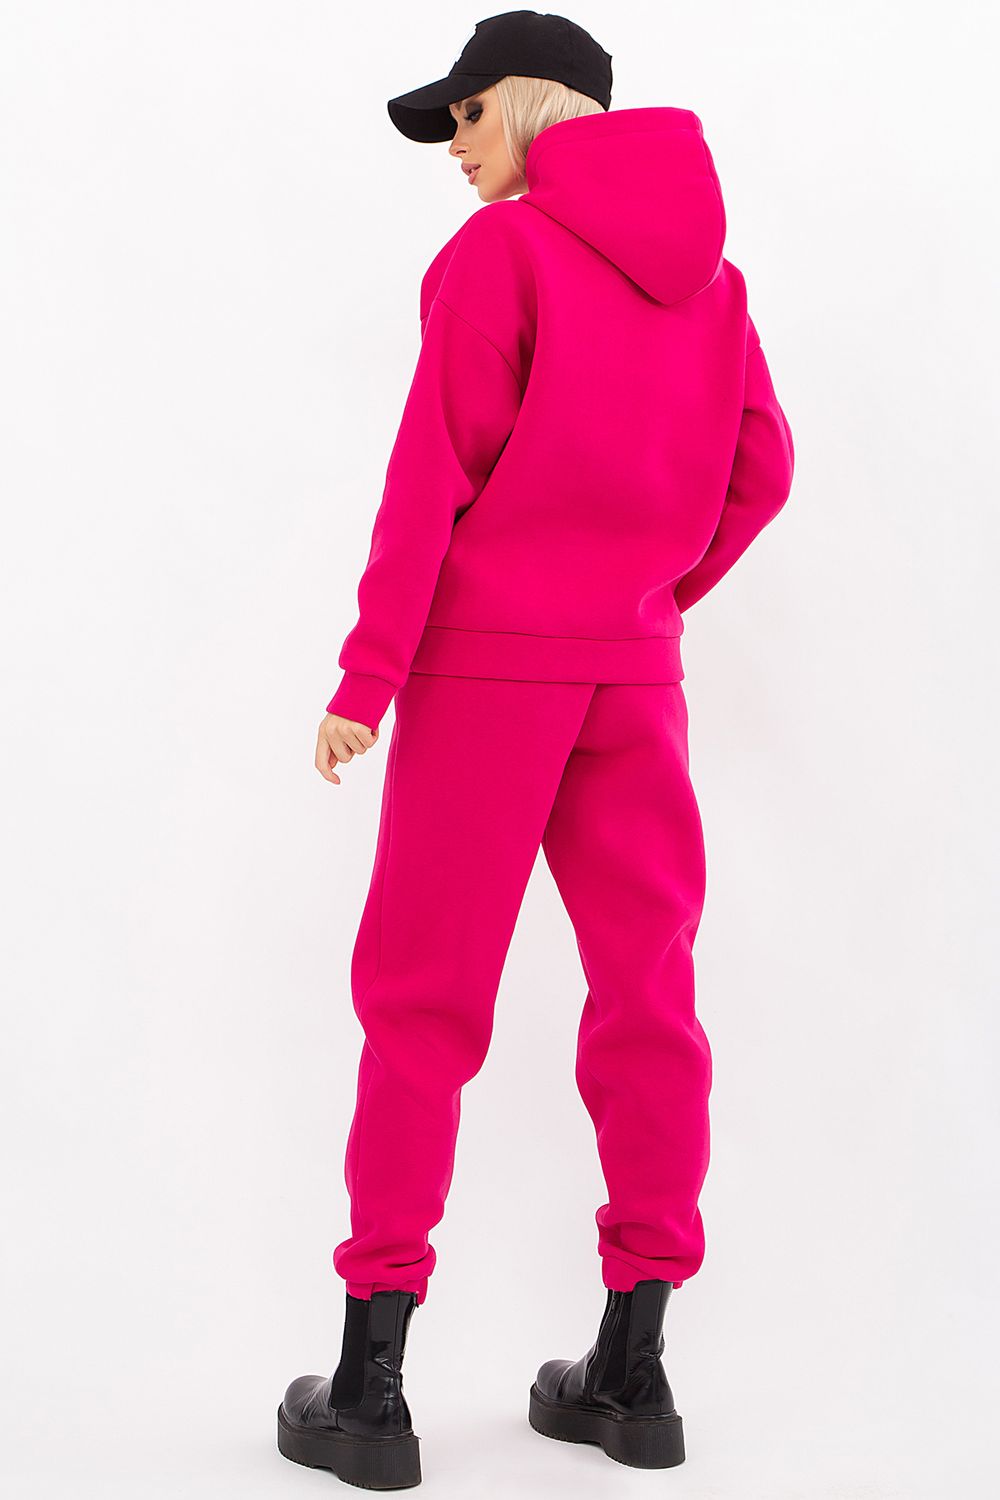 Теплый женский спортивный костюм с начесом ярко-розовый - фото